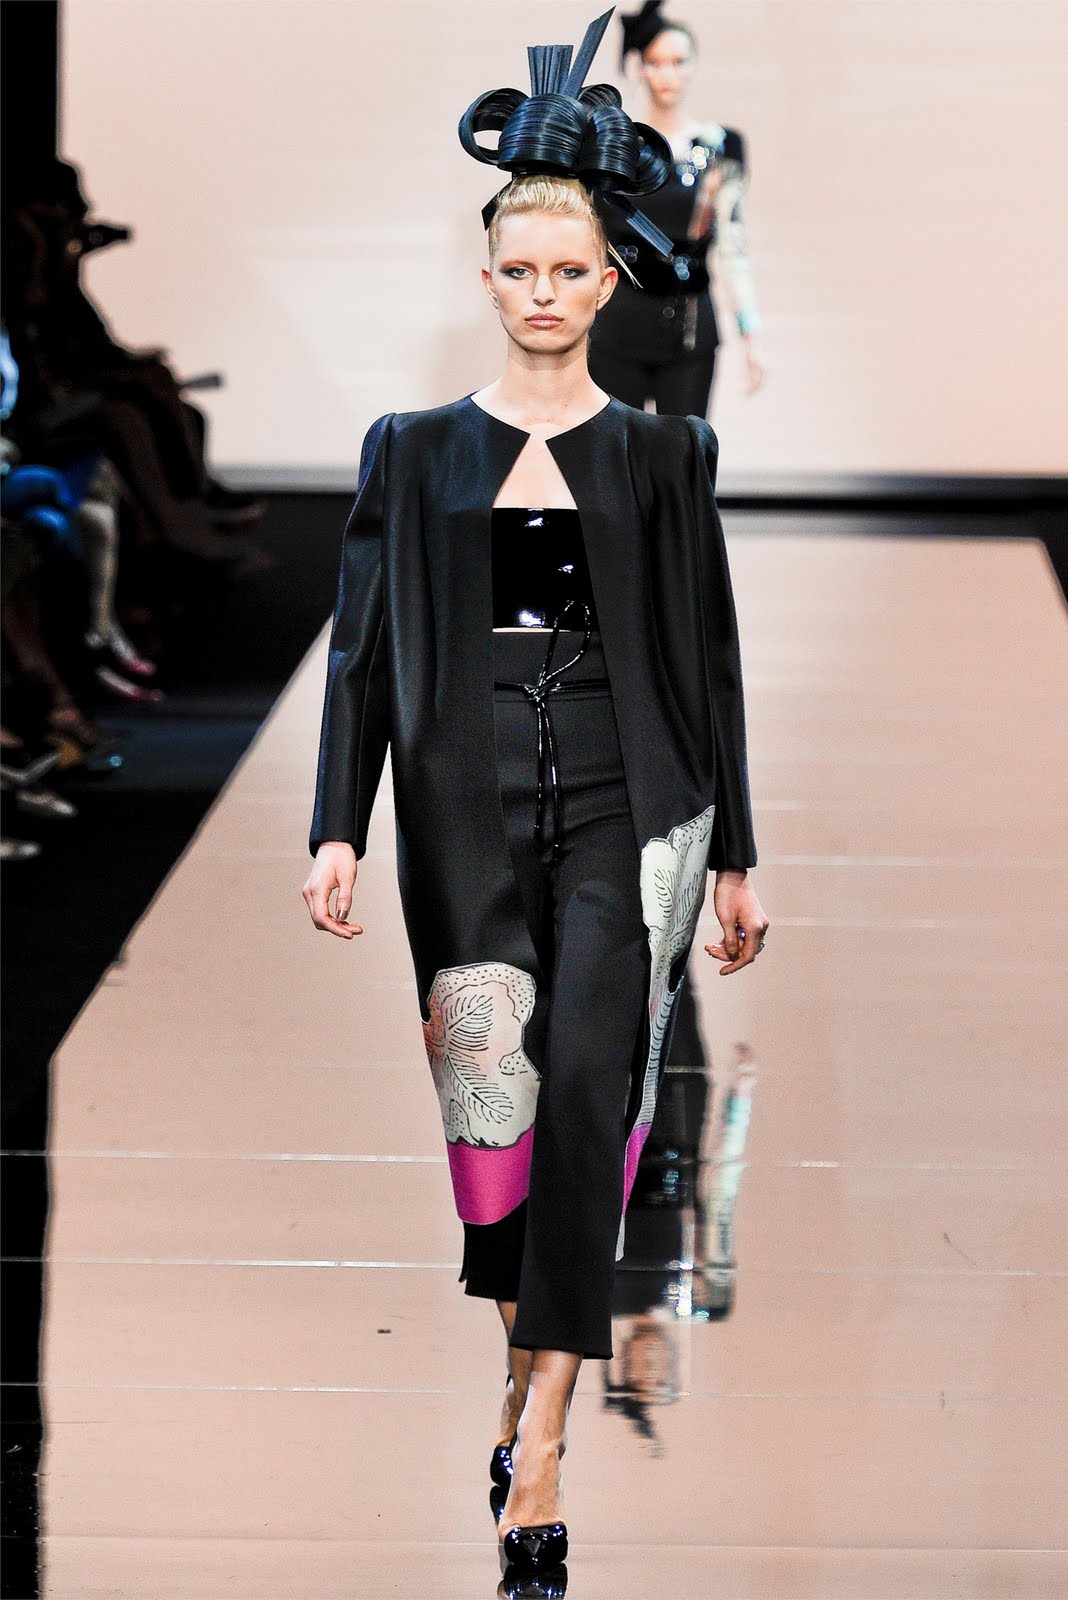 giorgio armani prive haute couture f/w 11/12 paris | visual optimism ...